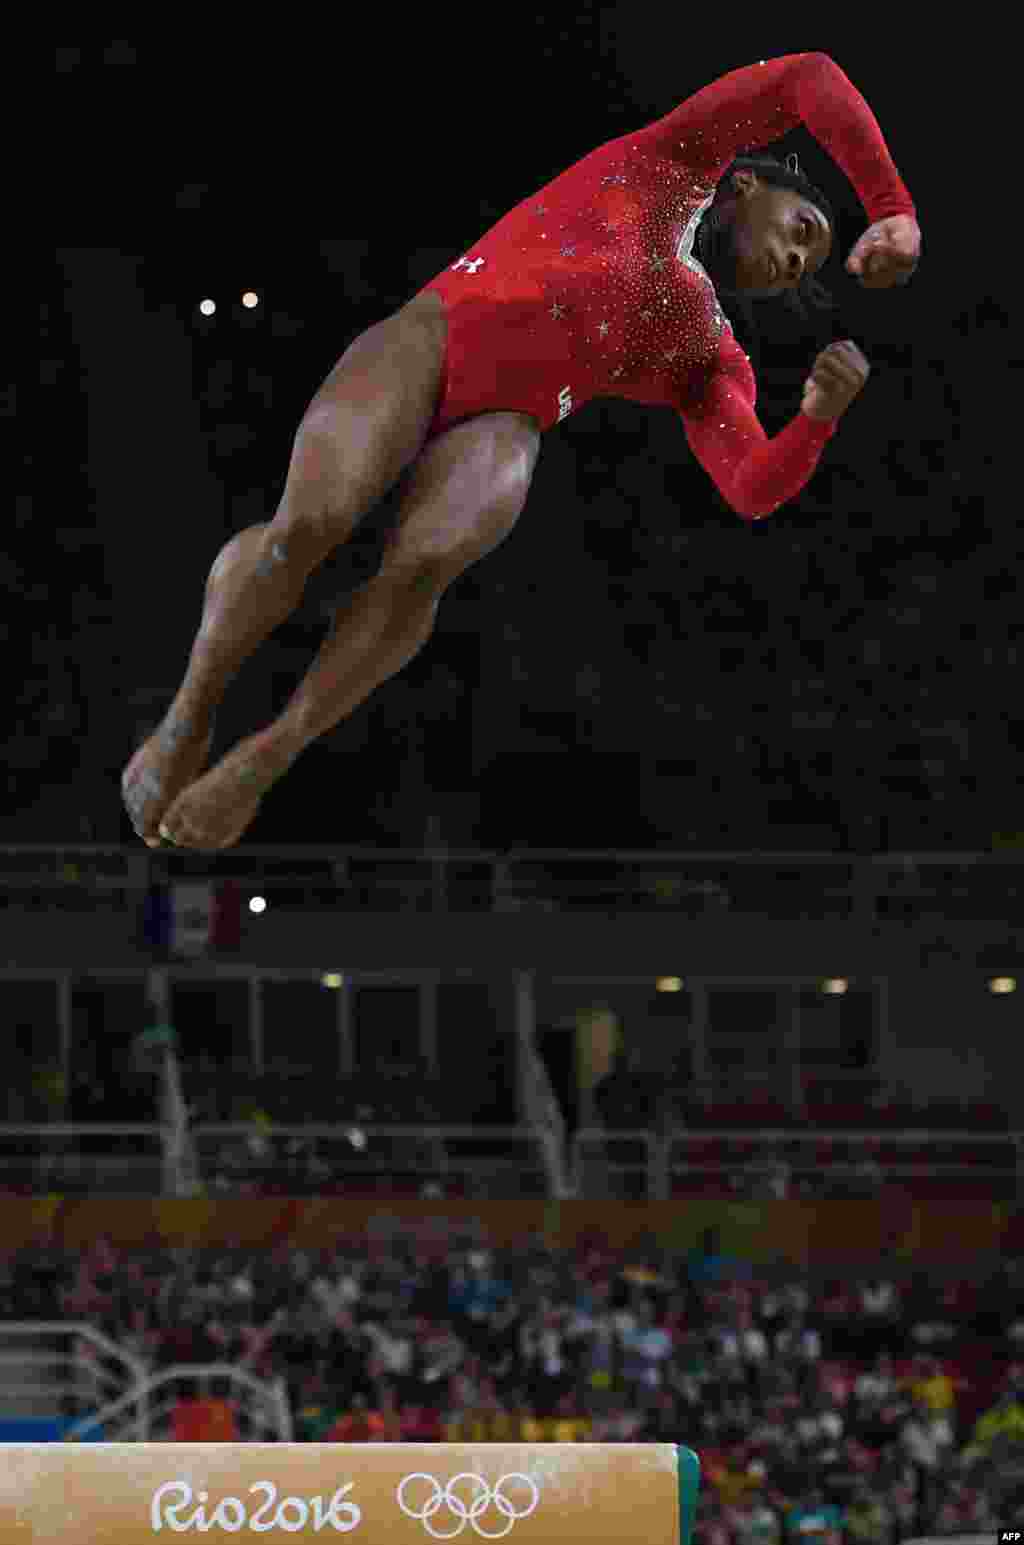 سیمون بایلز، با ۱۴۲ سانتیمتر قد و در سن ۱۹ سالگی، &nbsp;۴طلا و یک برنز &nbsp;را در ژیمناستیک المپیک ۲۰۱۶ &nbsp;به خود اختصاص داد تا نشان دهد المپیک قد و سن نمی&zwnj;شناسد.